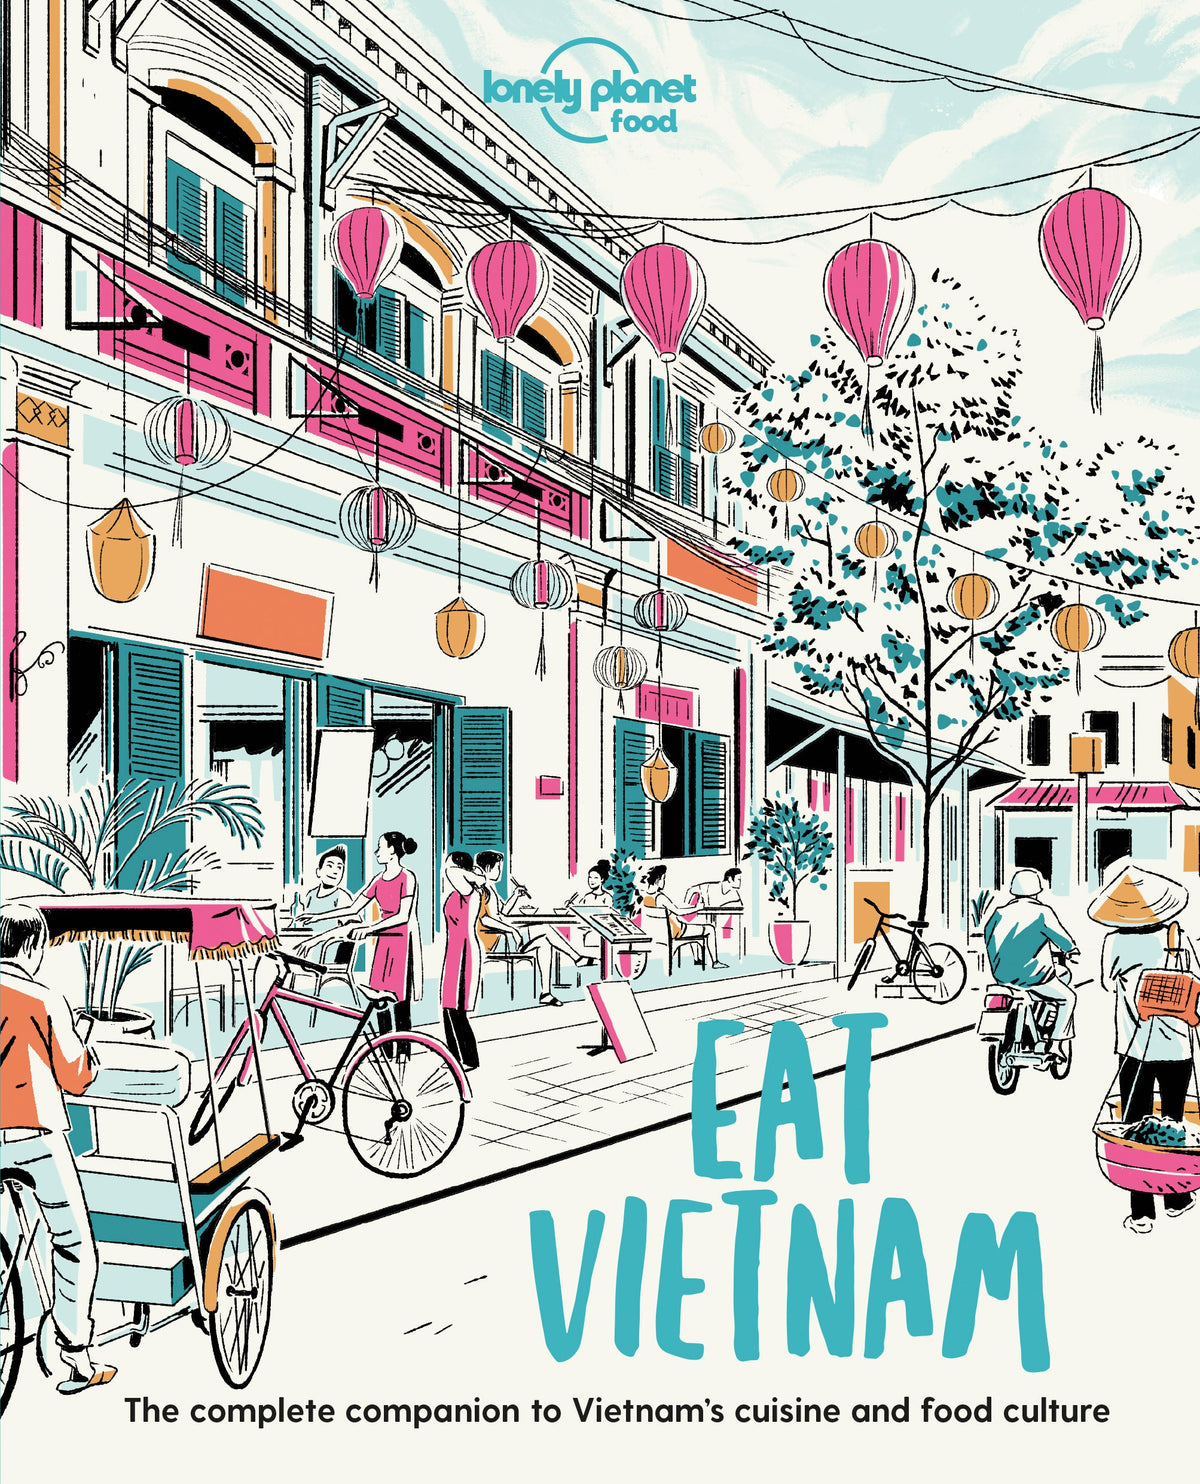 Eat Vietnam